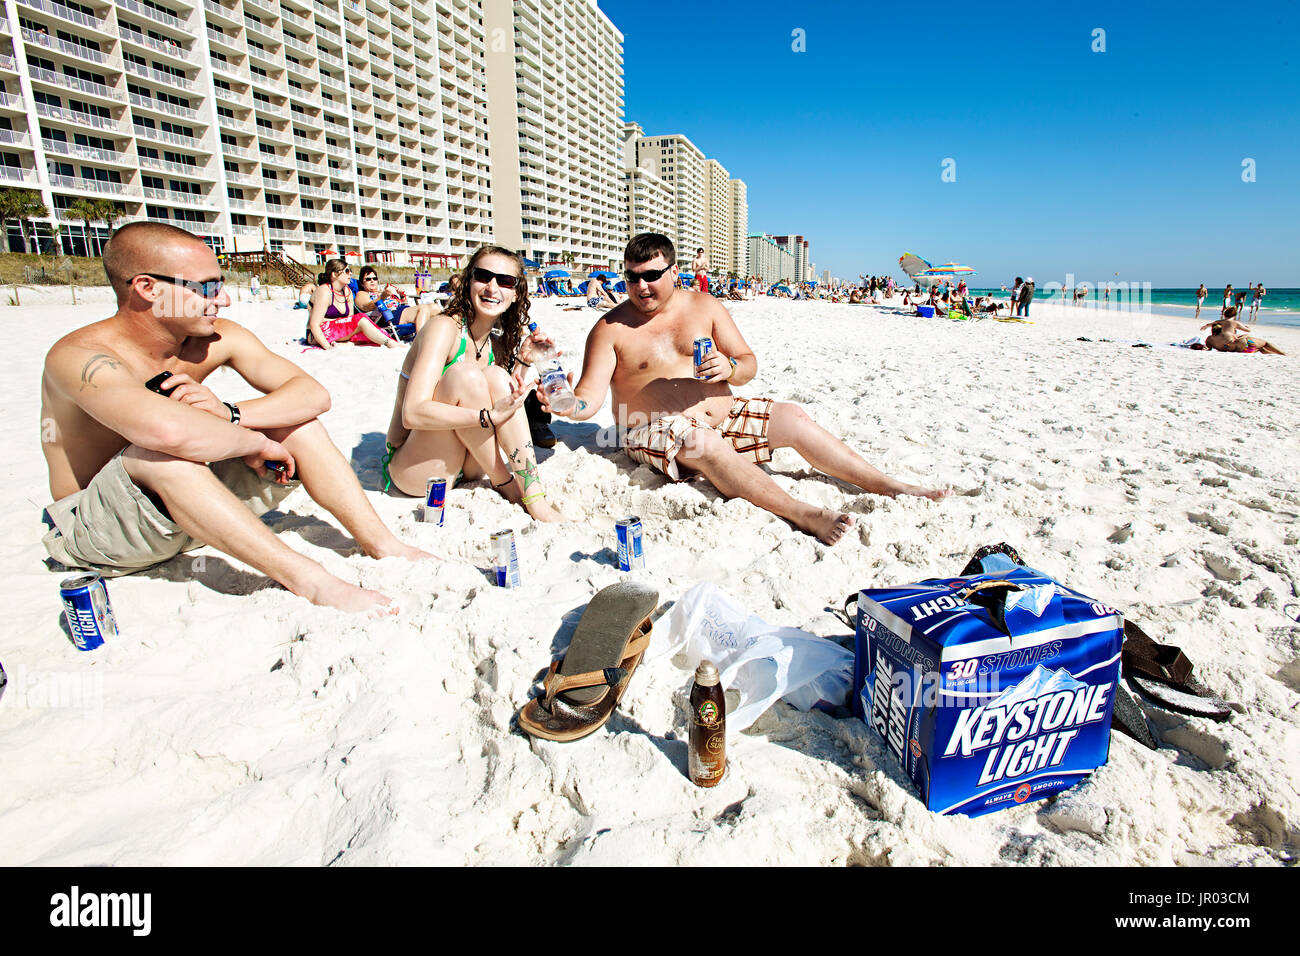 Les élèves de boire de l'alcool sur la plage pendant les vacances de printemps. Panama City Beach, Floride 2011 Banque D'Images